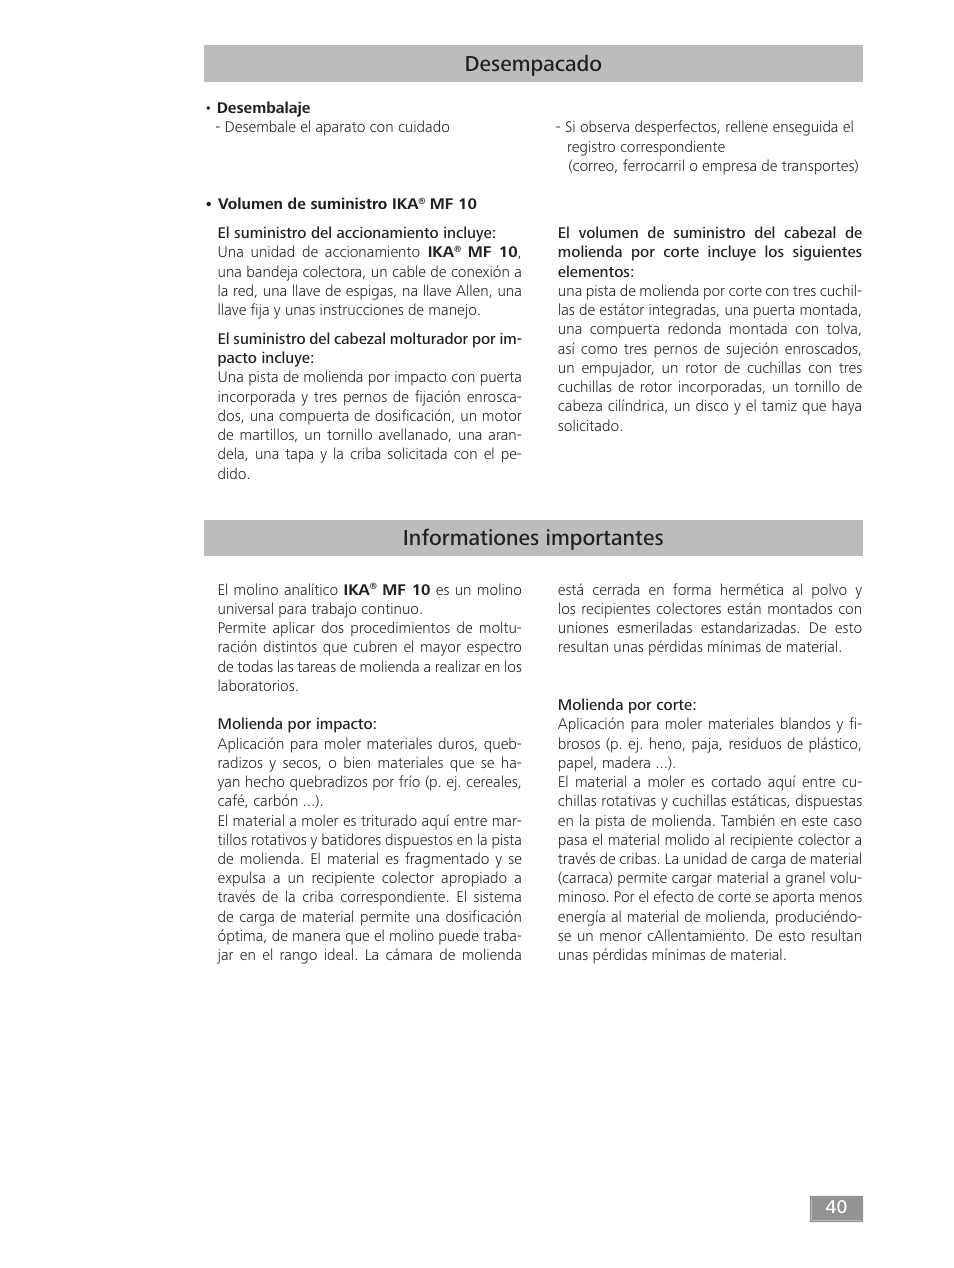 Desempacado informationes importantes | IKA MF 10 basic User Manual | Page 40 / 140